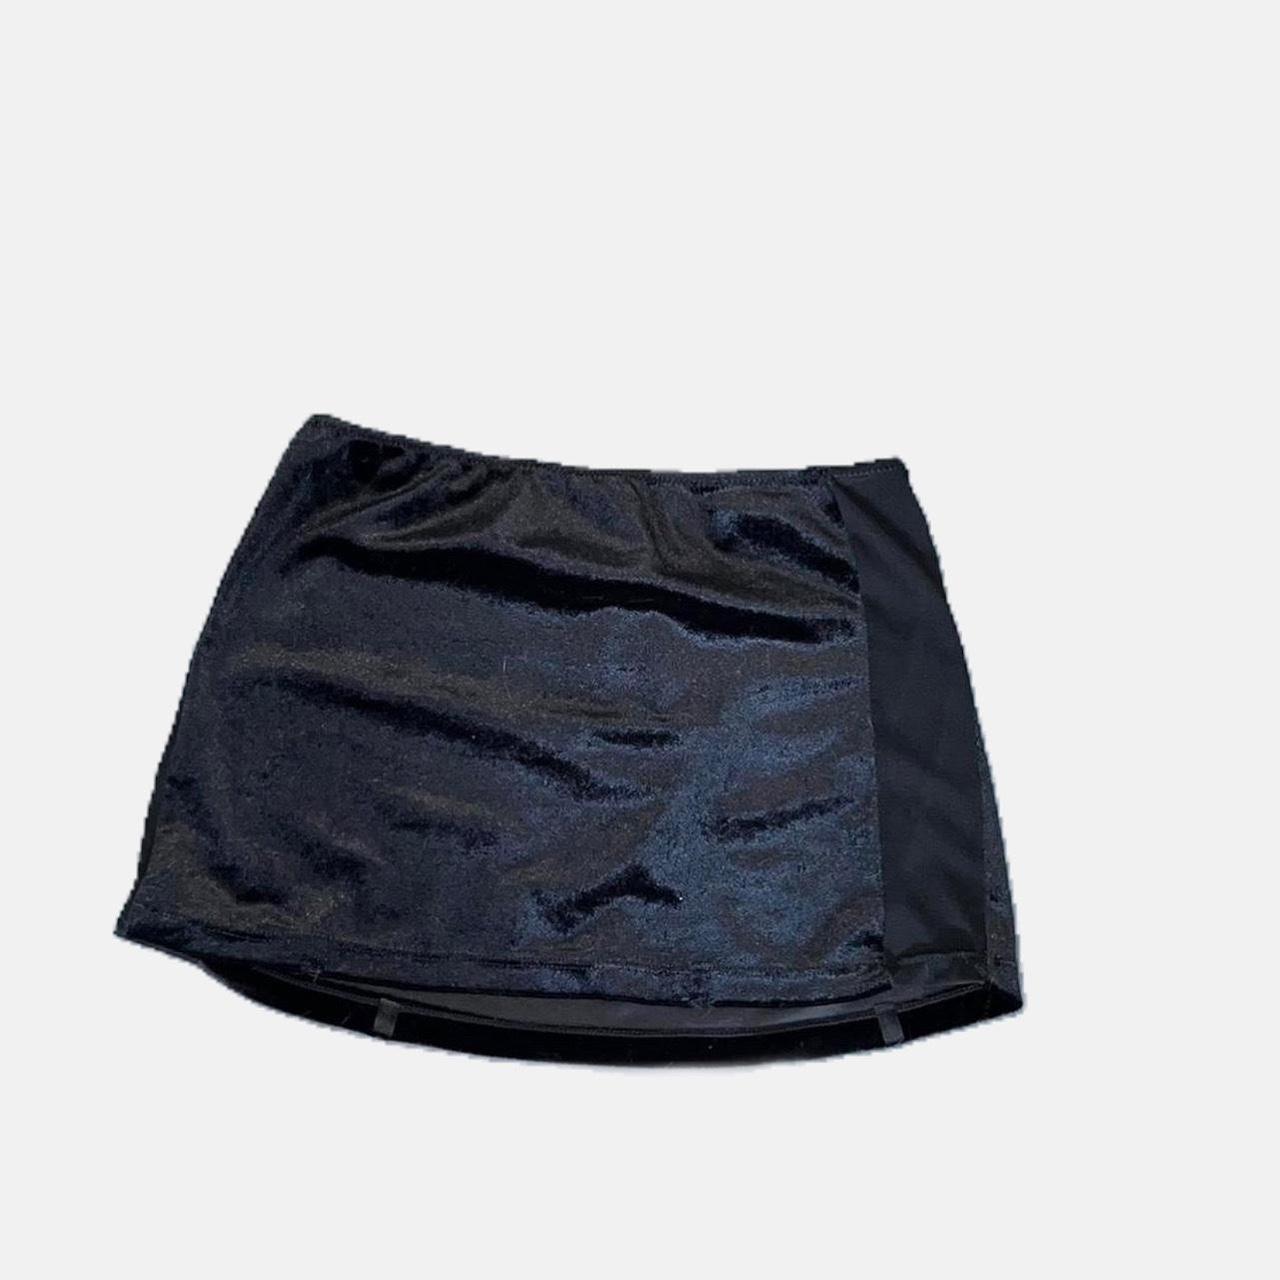 Ultra Mini Sexy Mini Skirt Size: Small Brand:... - Depop